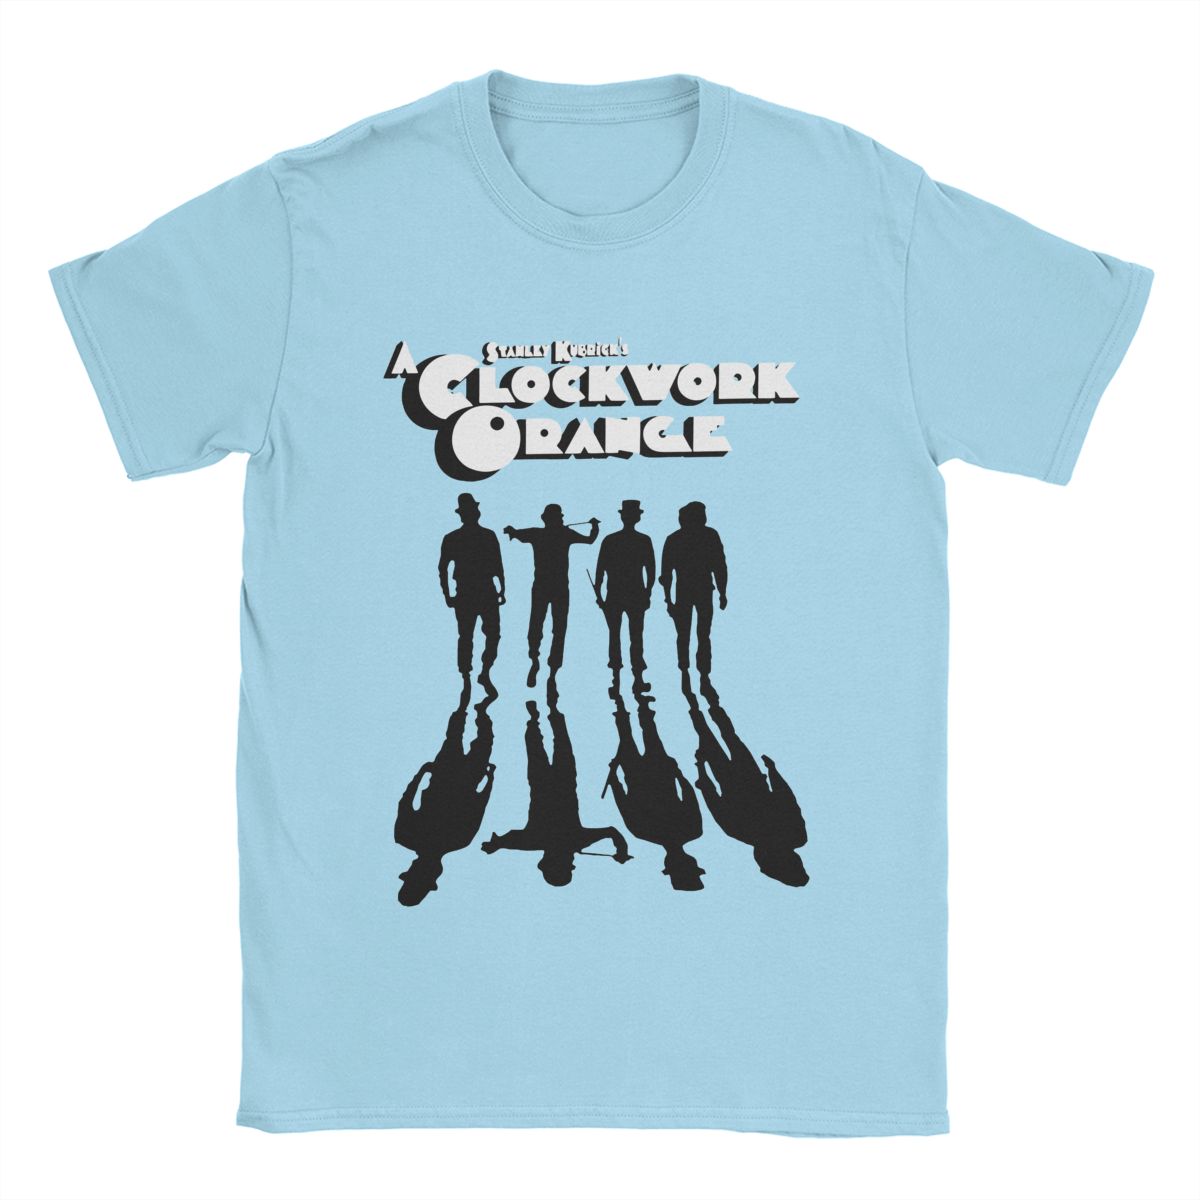 A Clockwork Orange - 100% Cotton T-Shirt - Stanley Kubrick - Sci-Fi Fan Garment-Sky Blue-S-